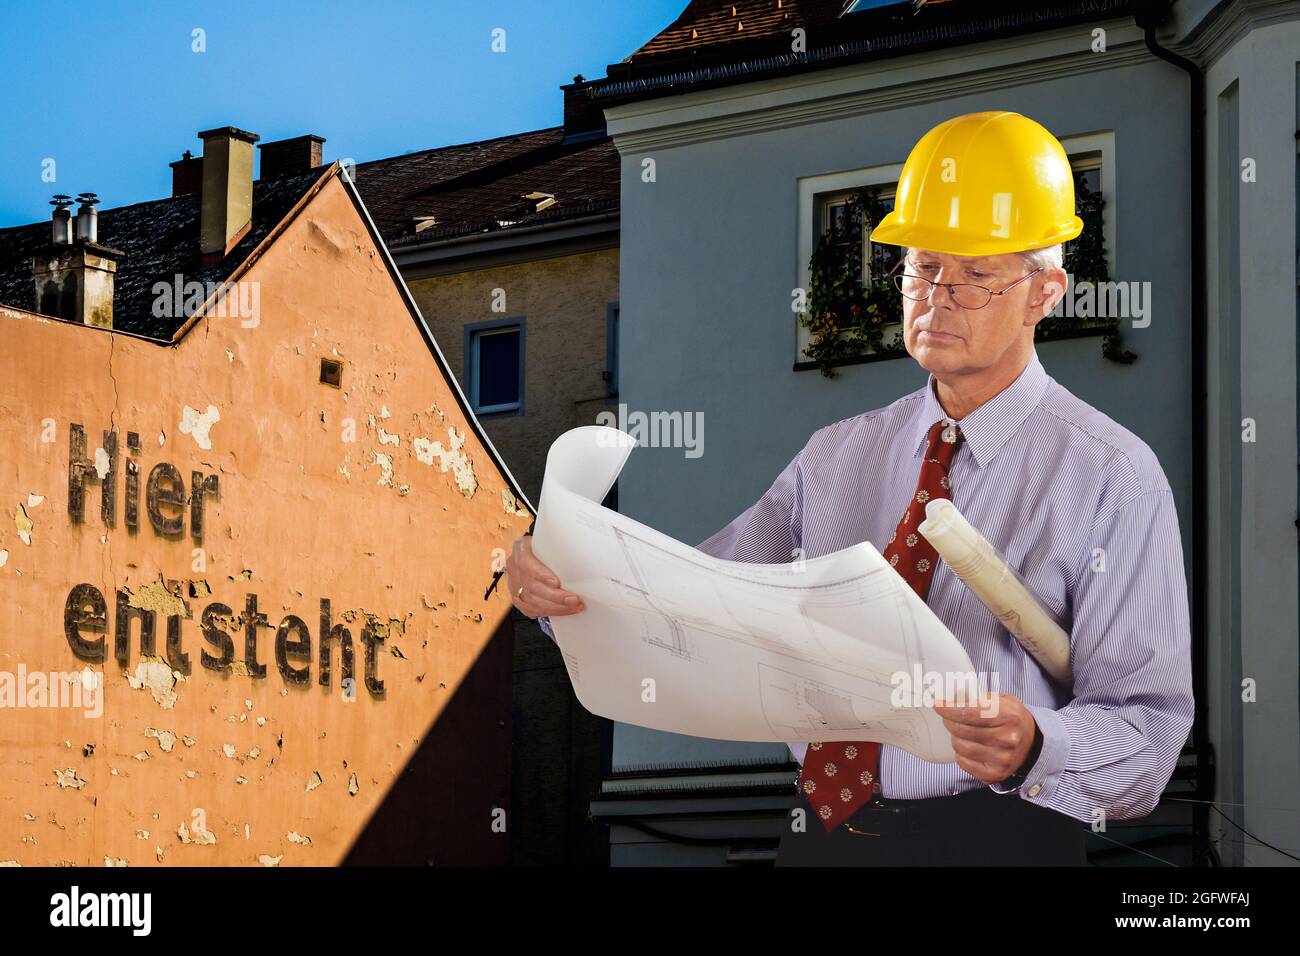 Architekt mit Bauplan und Hut, vor heruntergekommenen Häusern mit der Inschrift: Hier wird gebaut Stockfoto